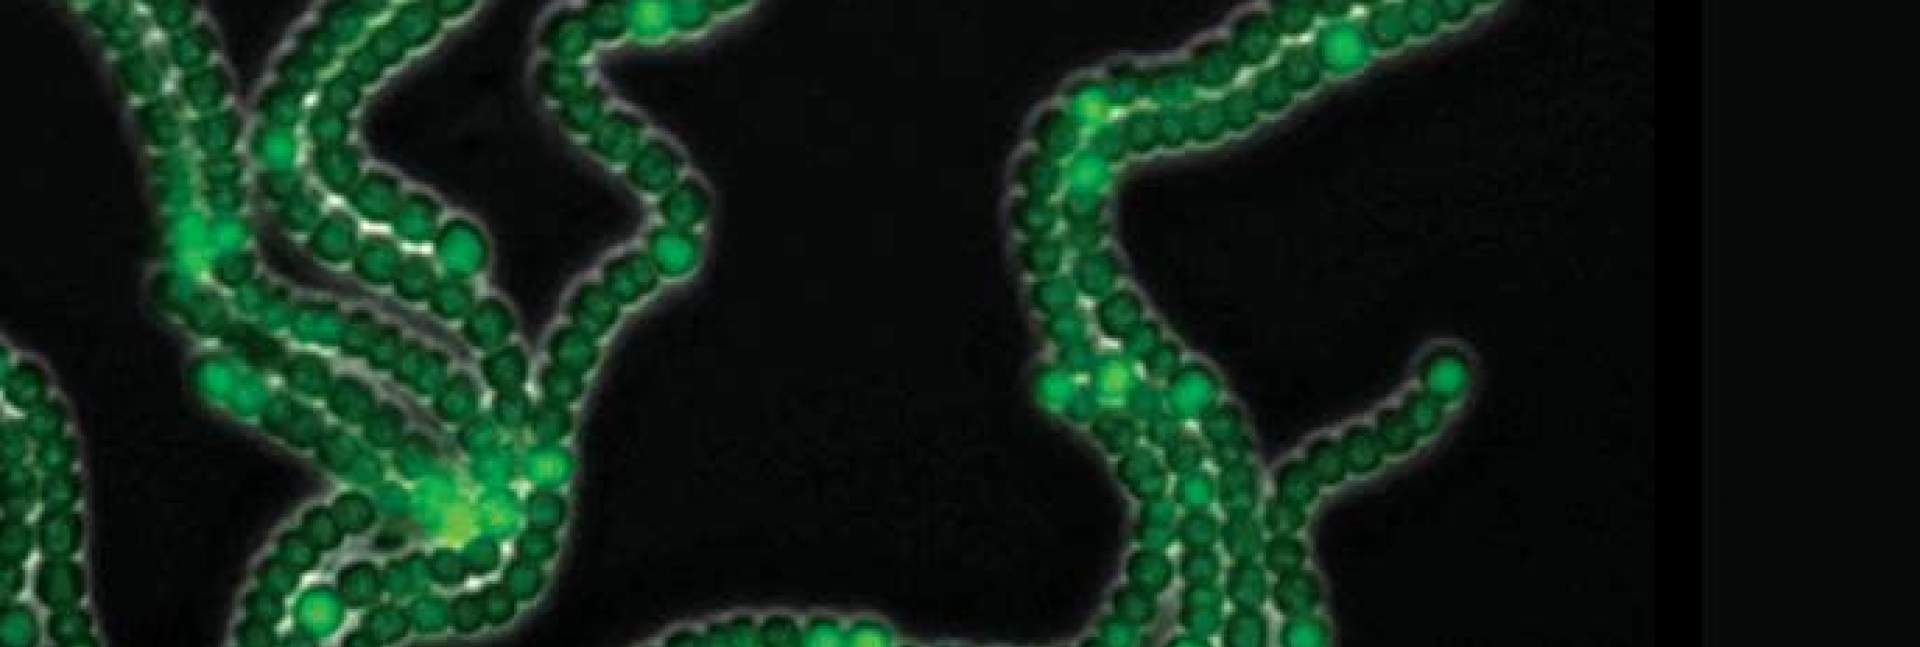 cyanobacteria reveal developmental pattern